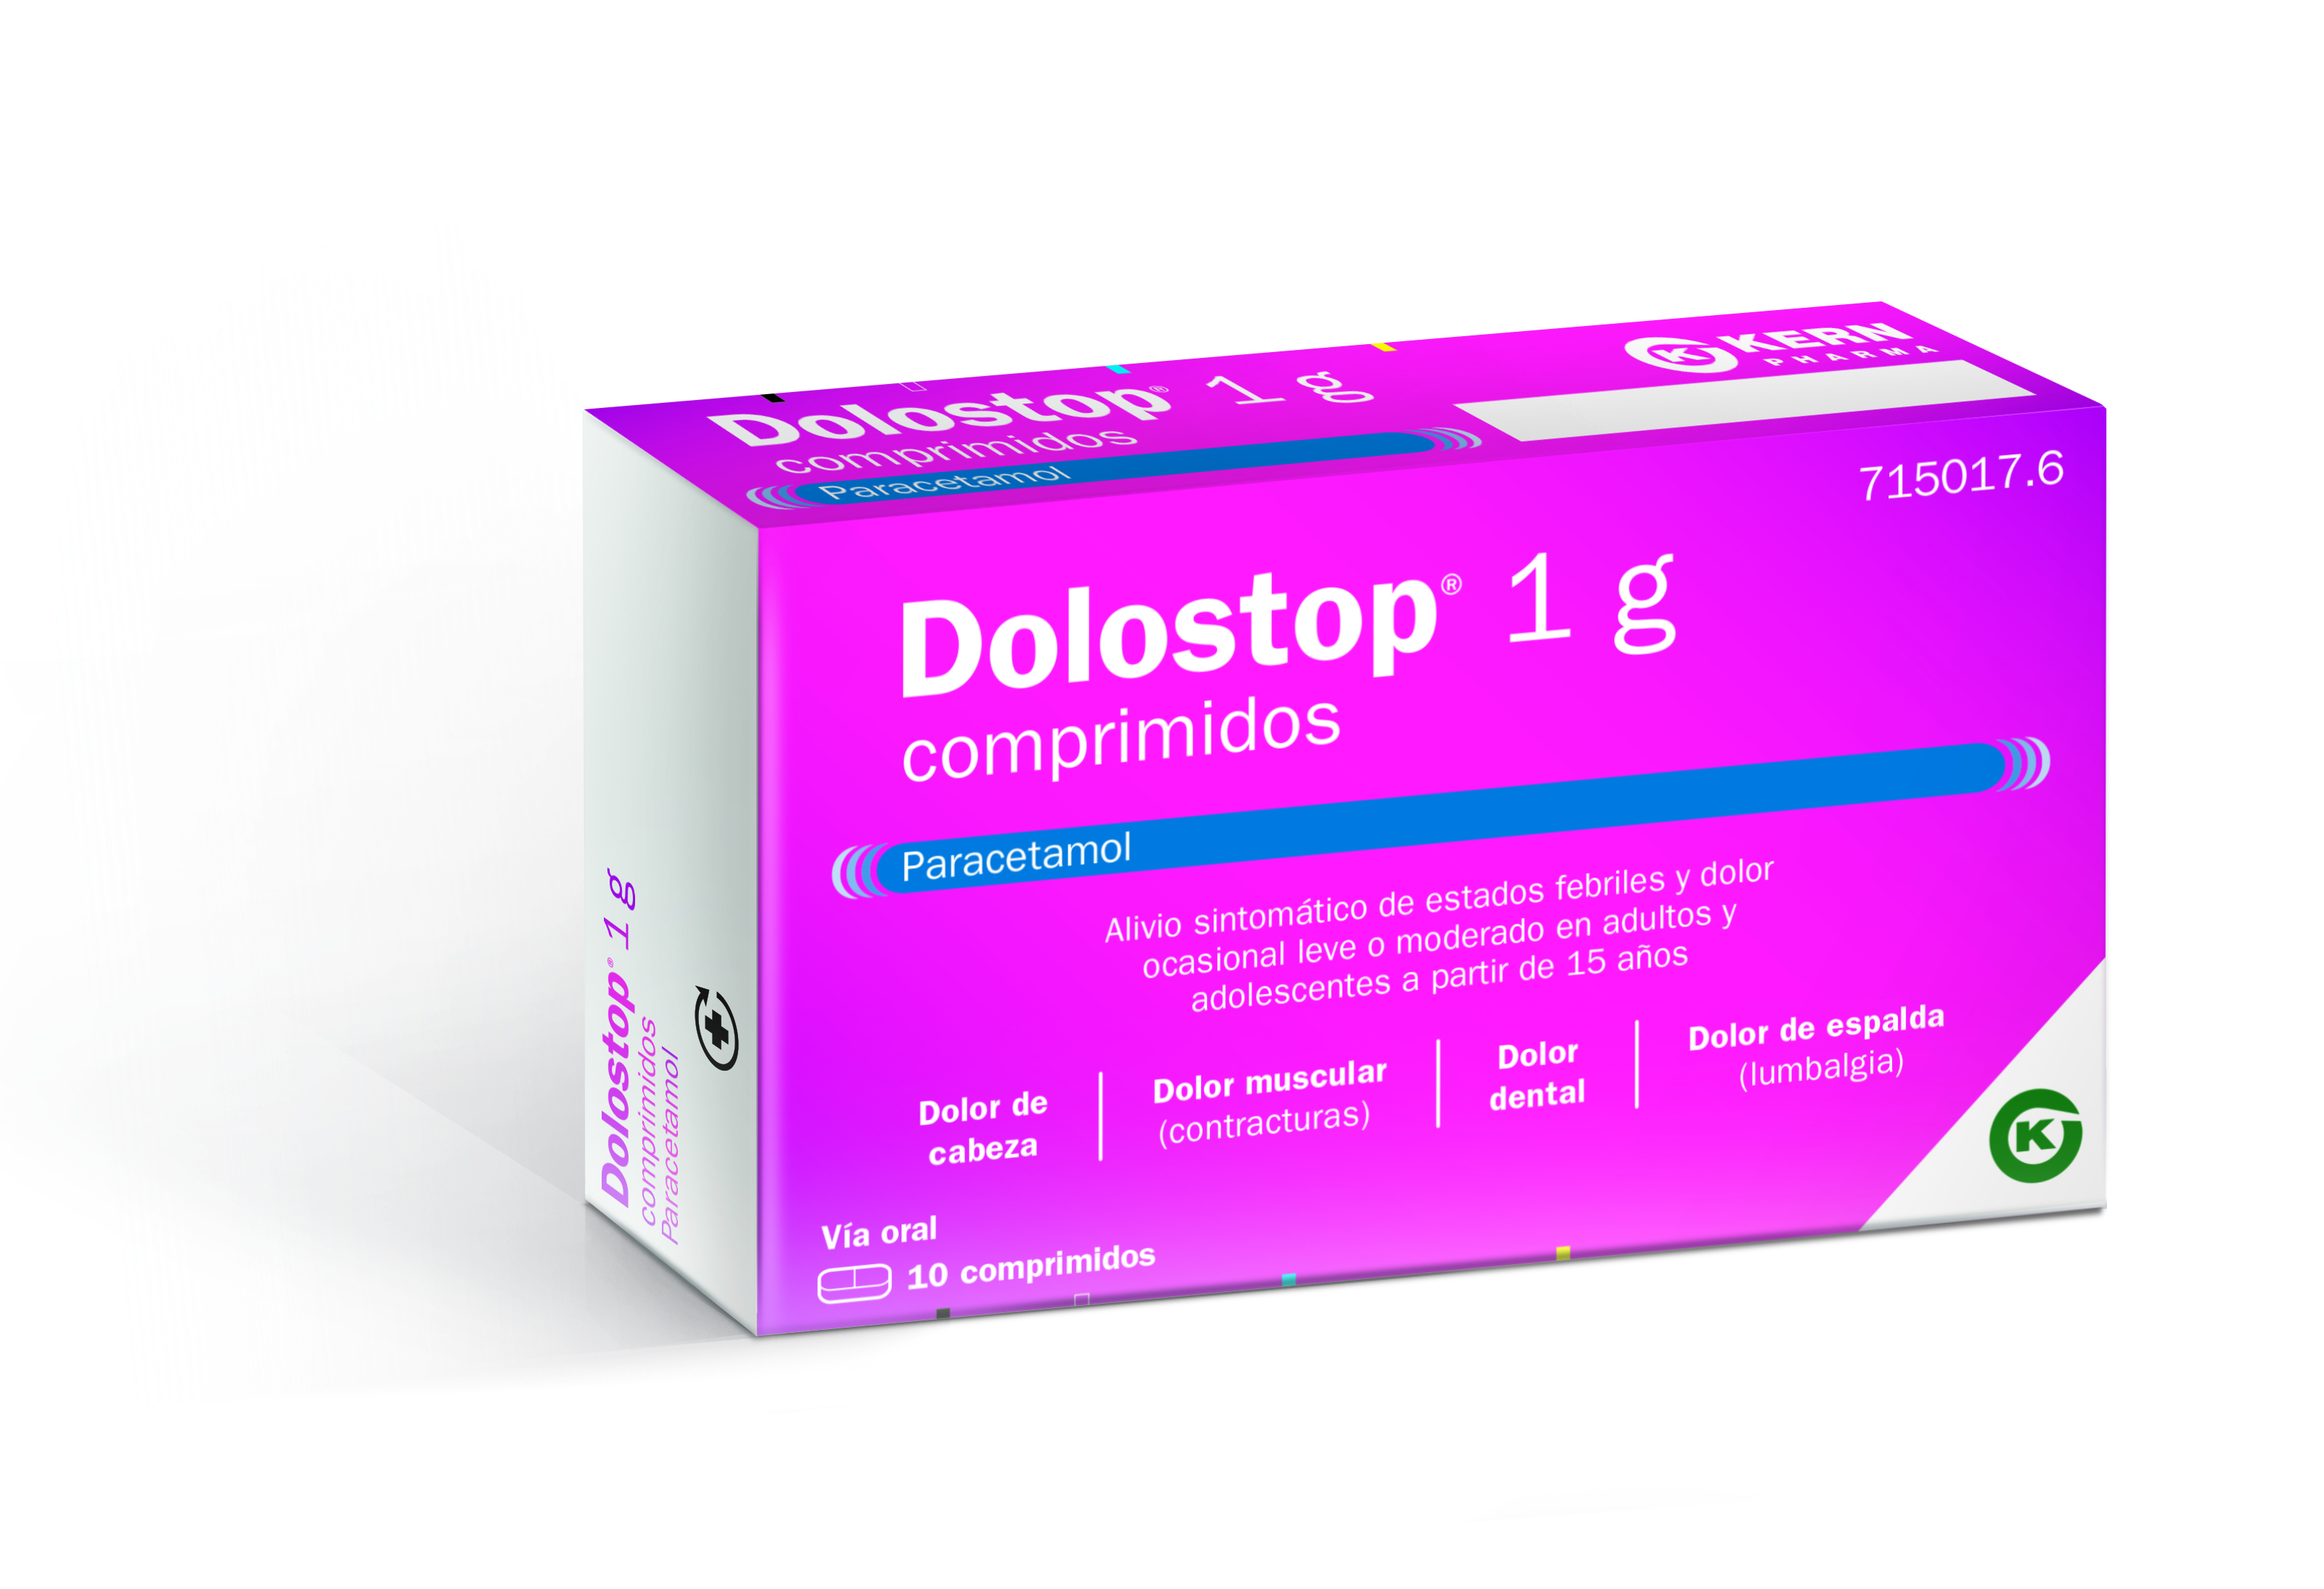 DOLOSTOP 1 G COMPRIMIDOS , 10 comprimidos